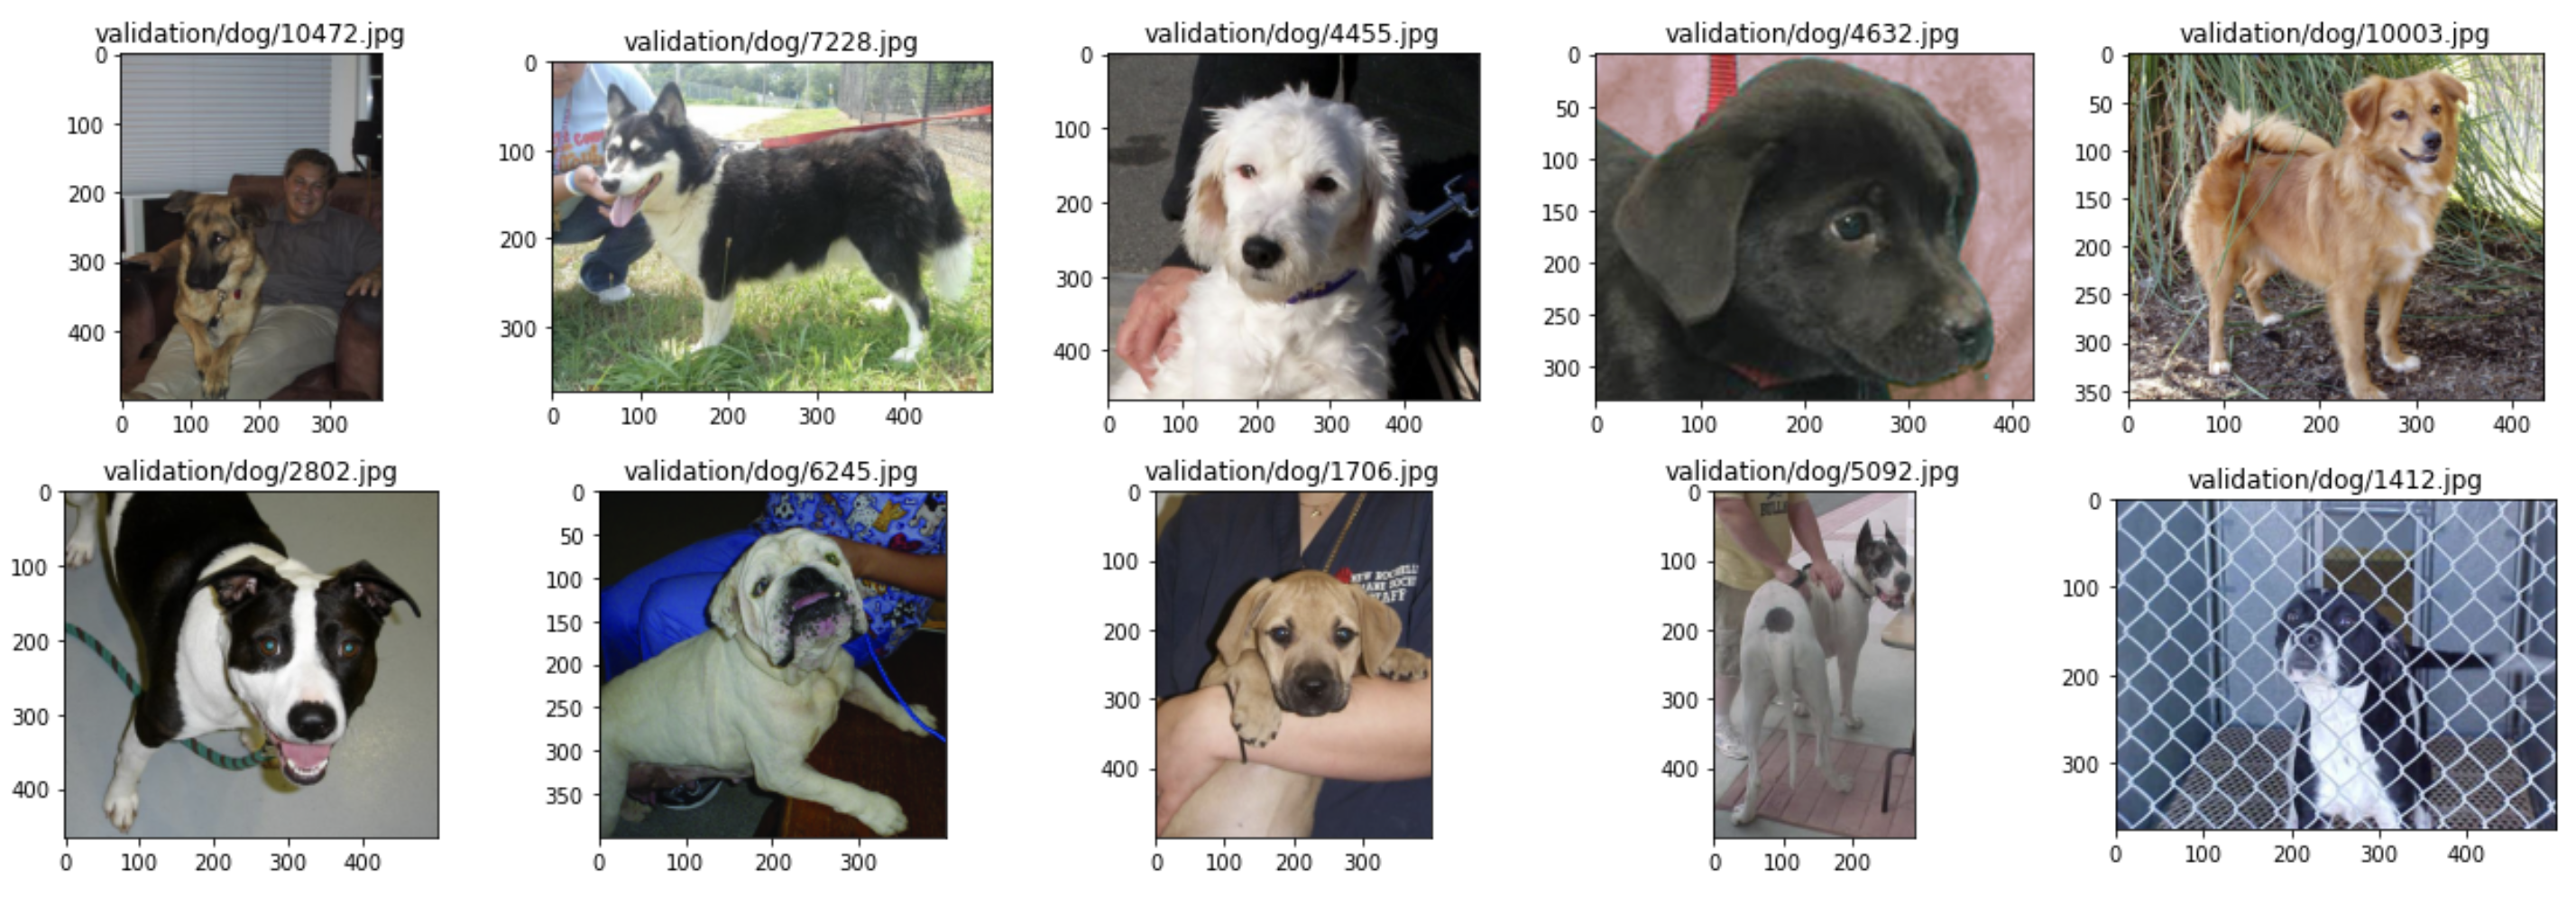 Image 7 — Random subset of dog images (image by author)